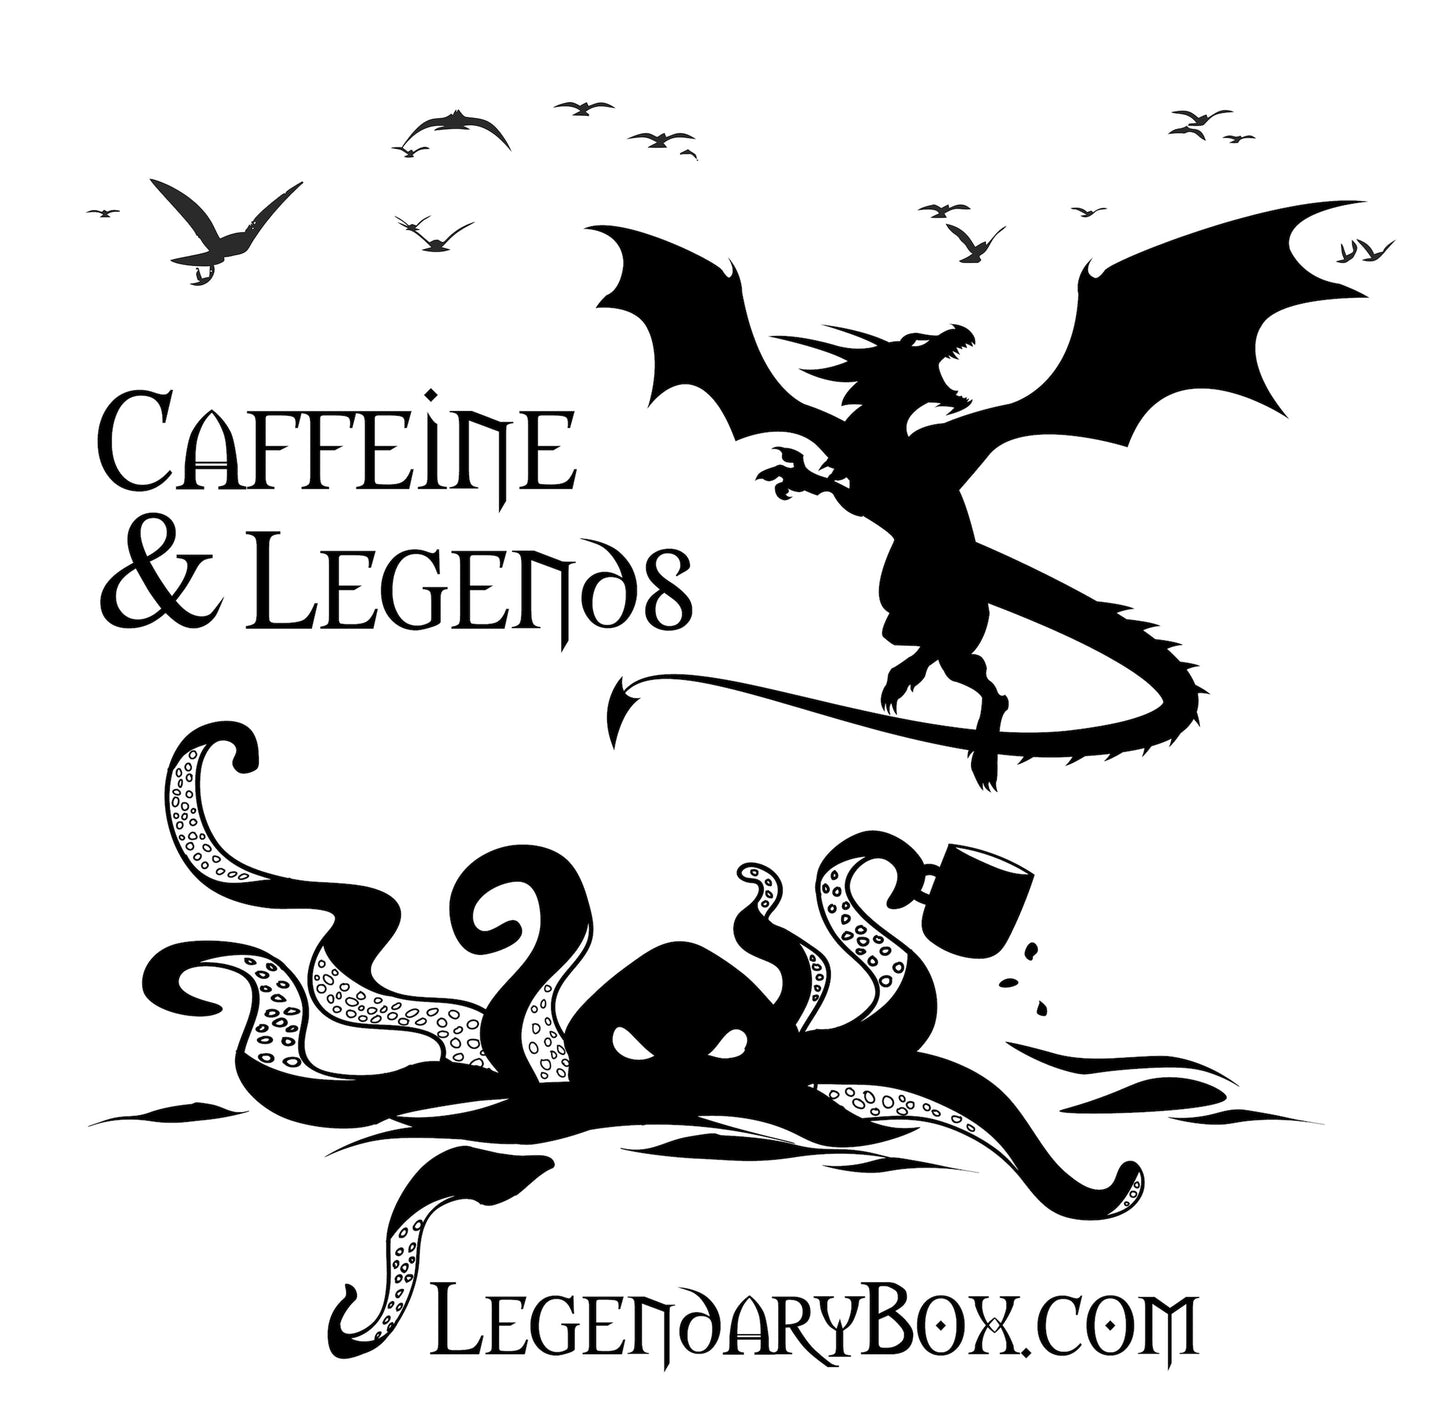 Caffeine & Legends Digital Gift Card! Caffeine & Legends 